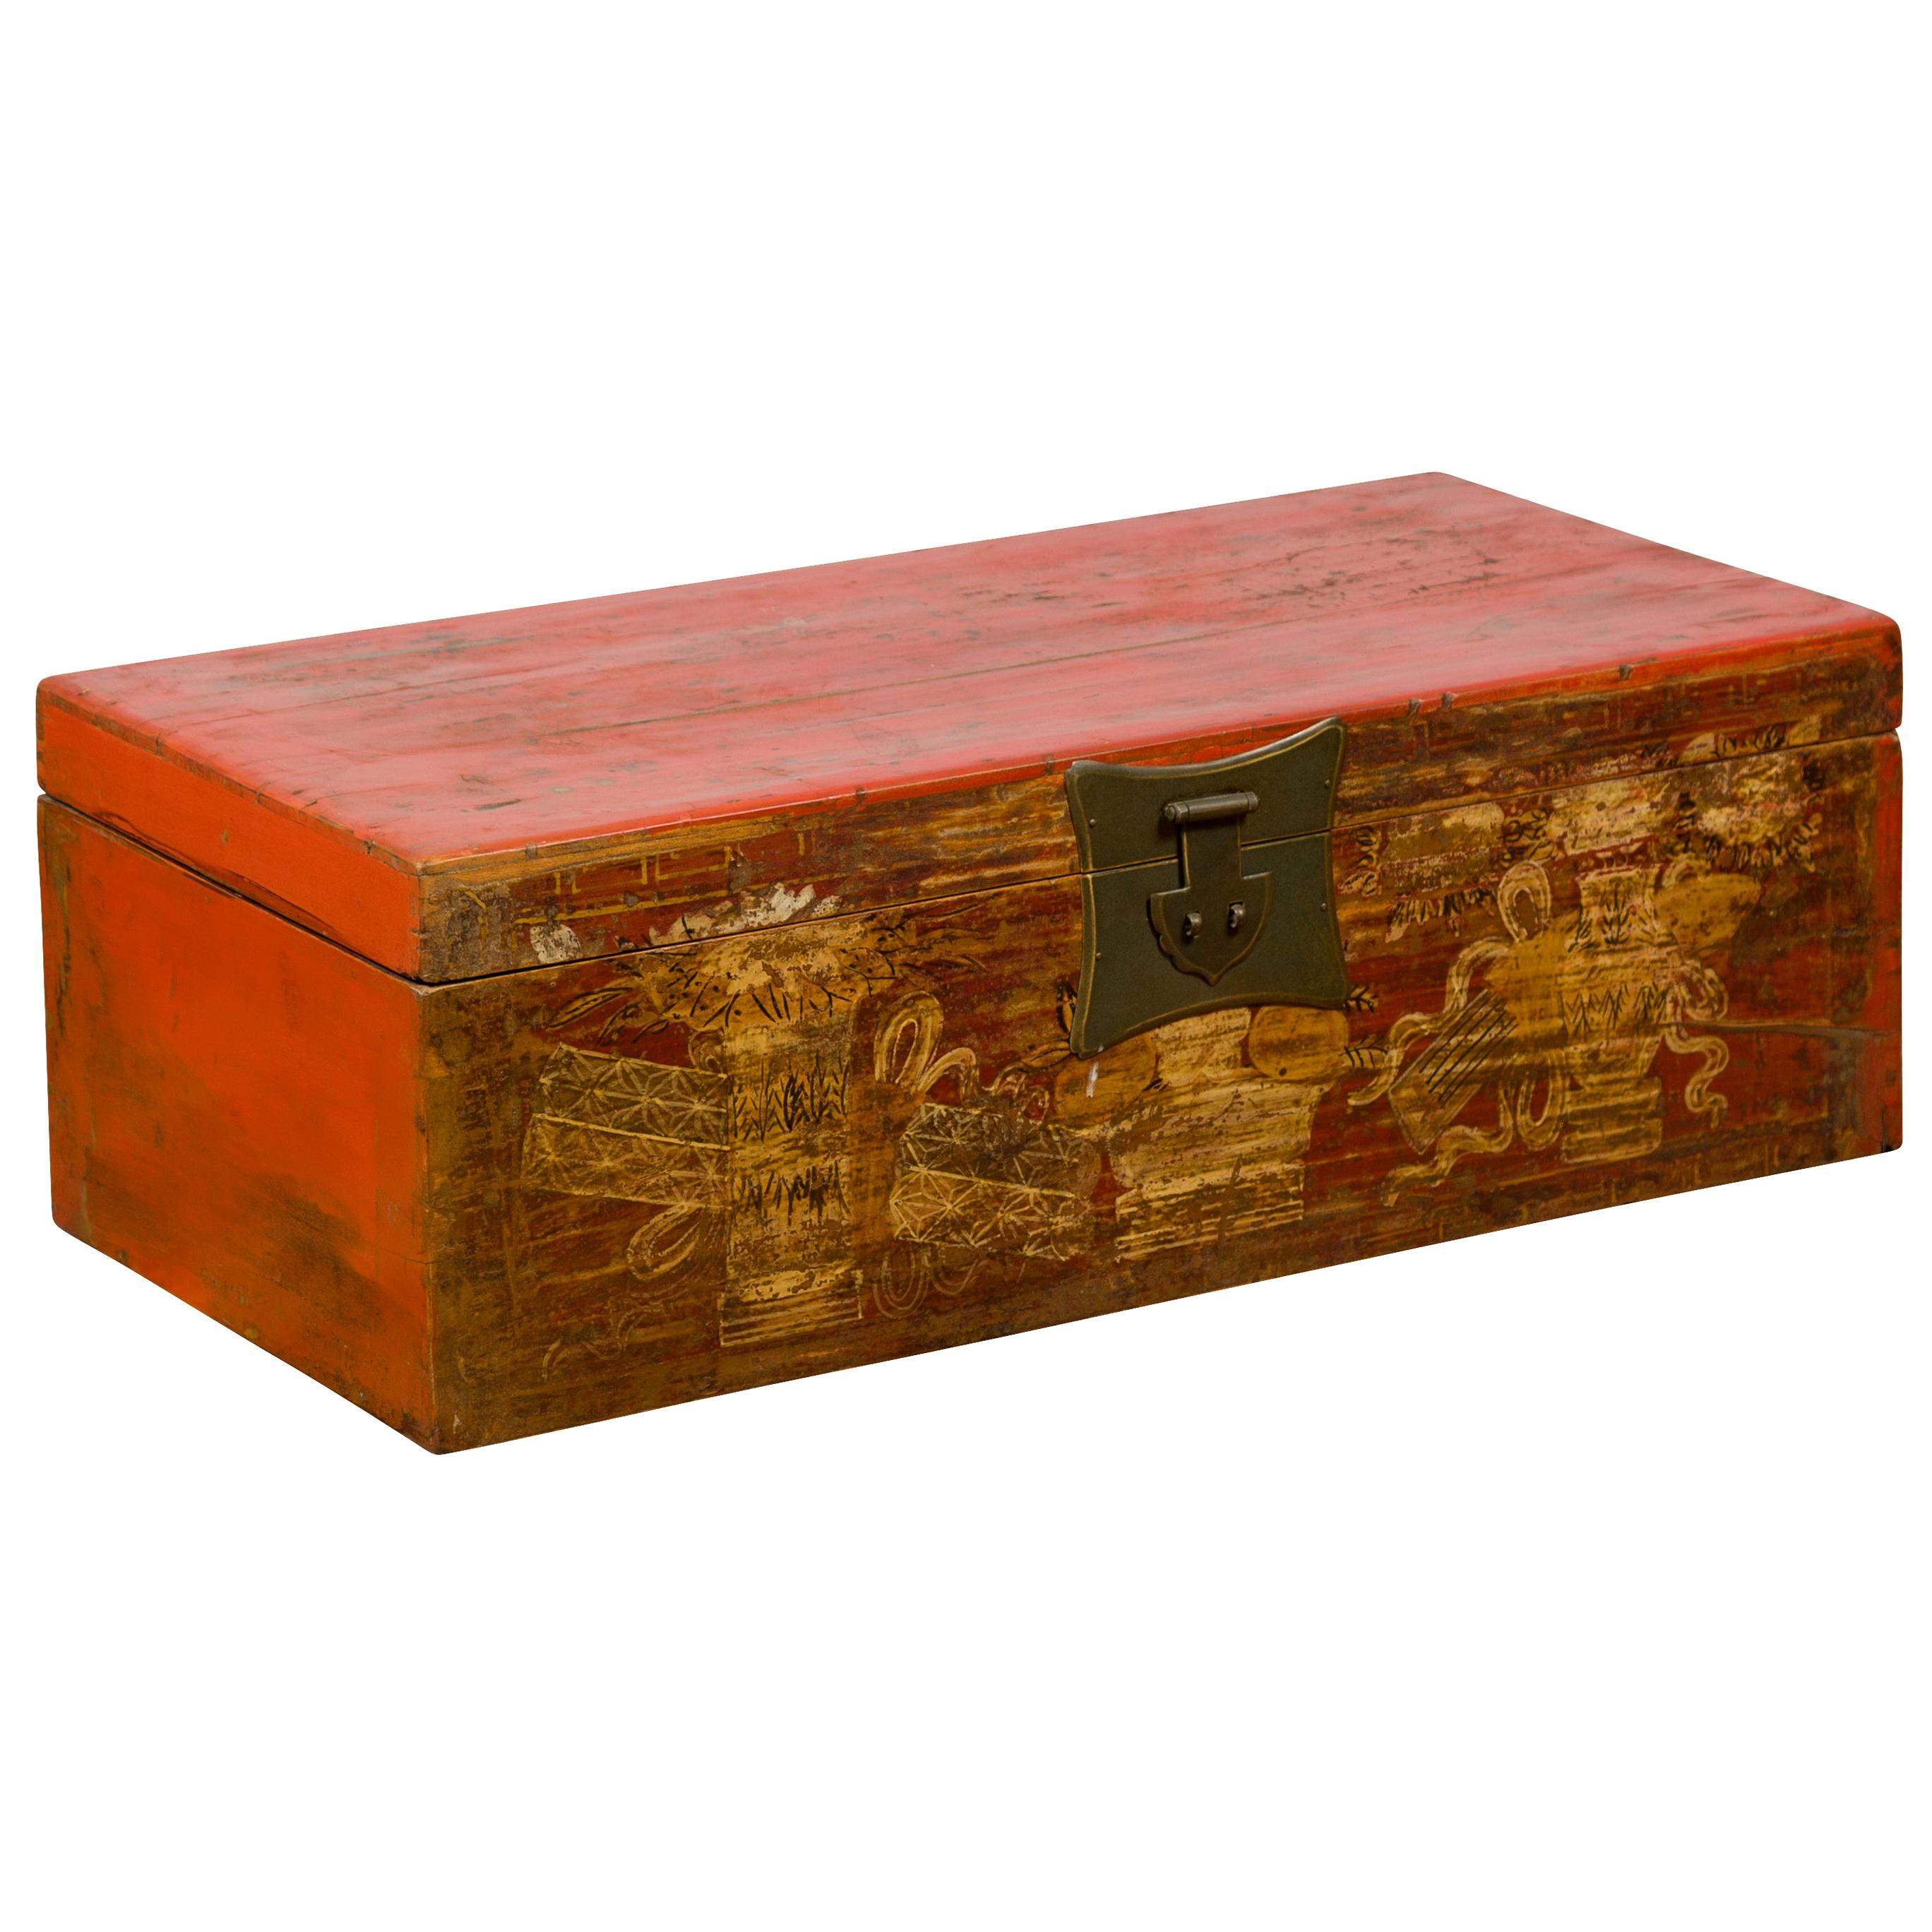 Chinesische rot lackierte Vintage-Schachtel mit goldenen Motiven und Bronzebeschlägen, rot lackiert